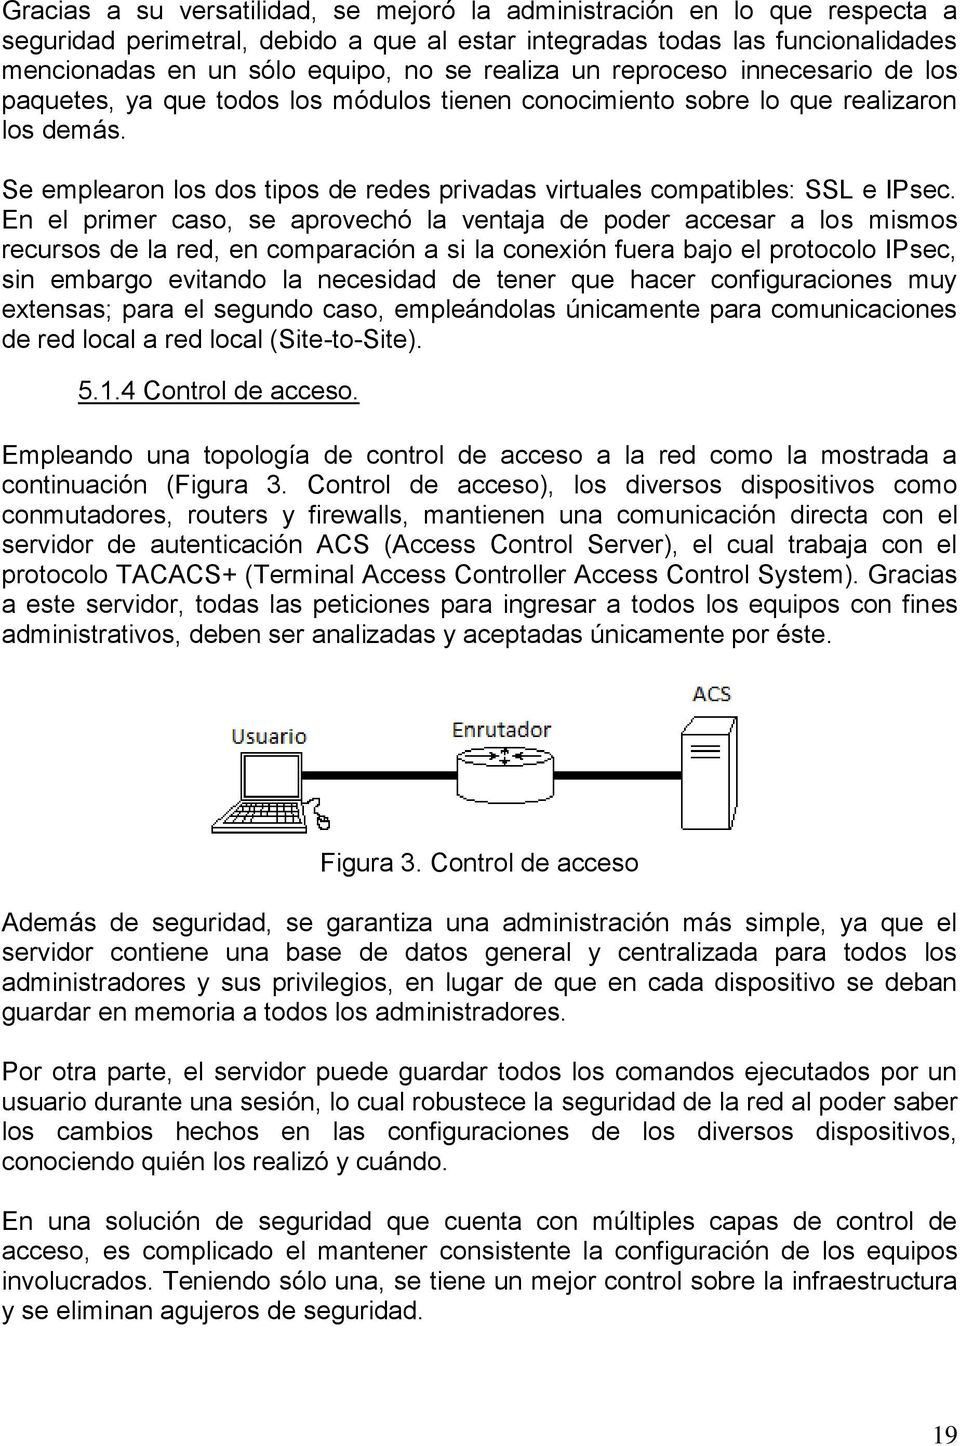 Se emplearon los dos tipos de redes privadas virtuales compatibles: SSL e IPsec.